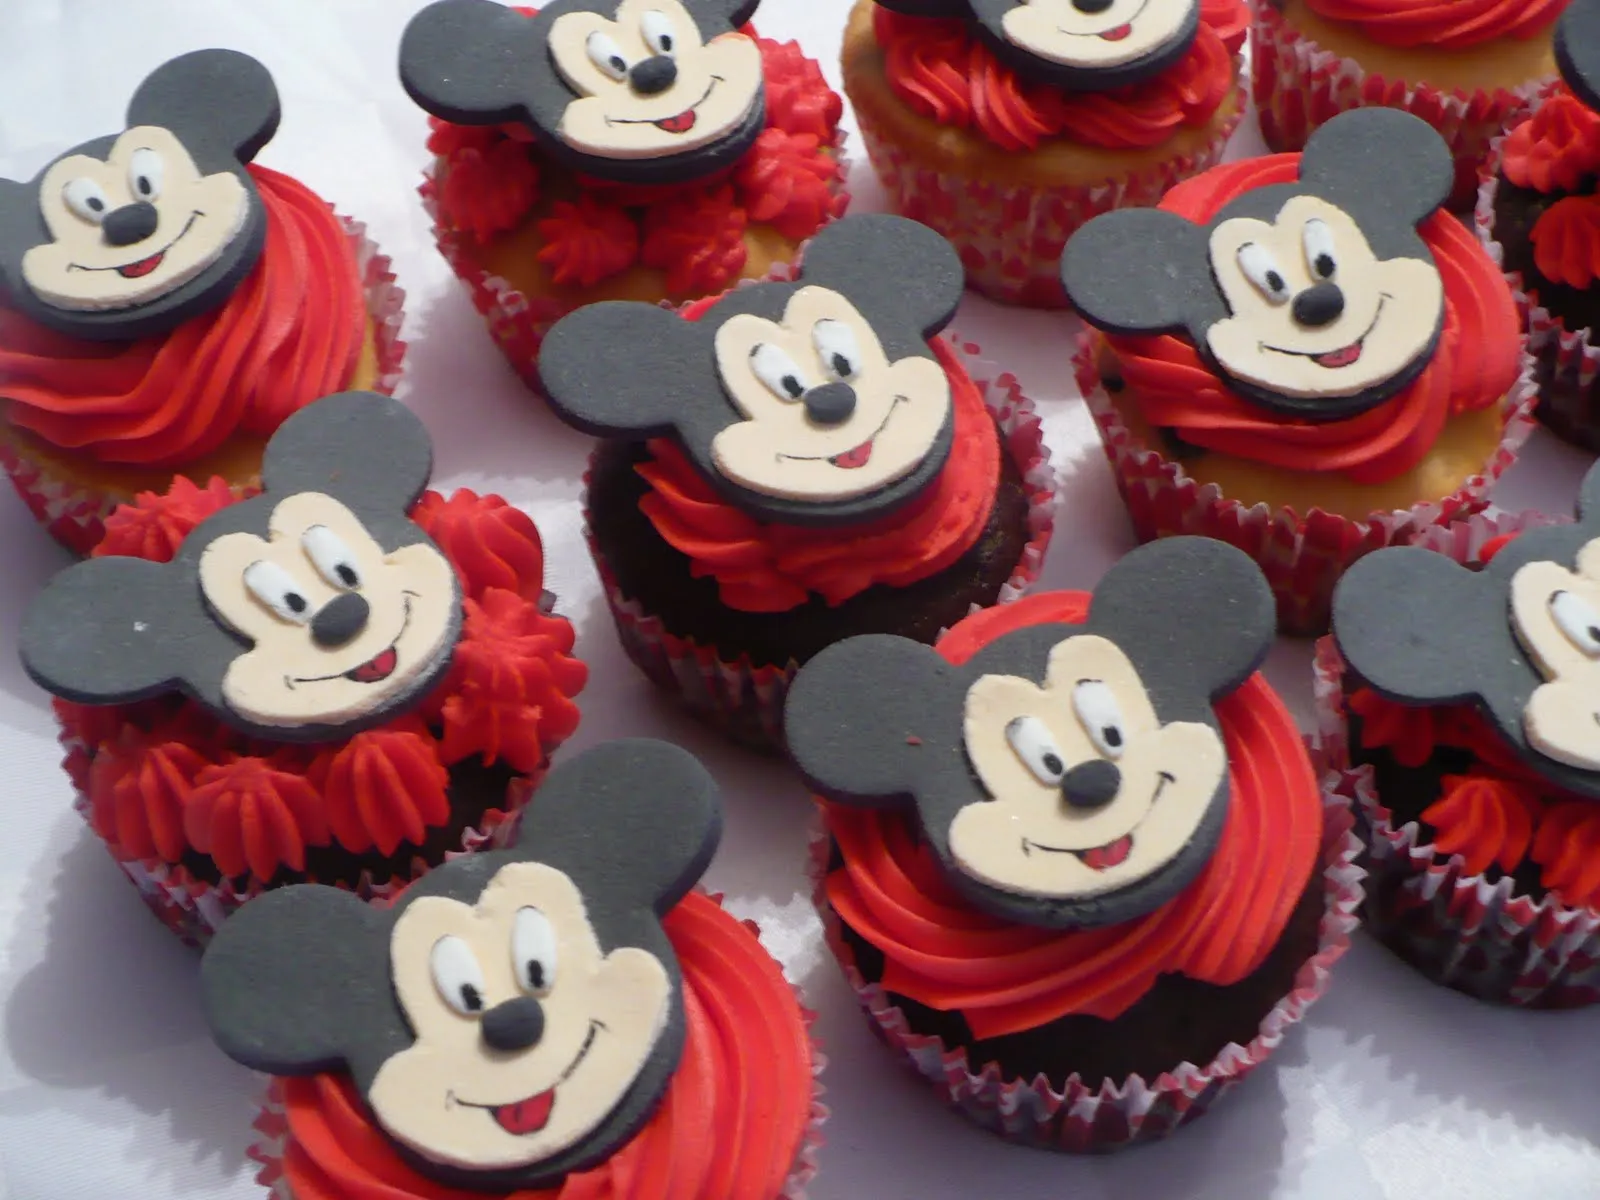 Cupcakes decorados de Mickey Mouse - Imagui